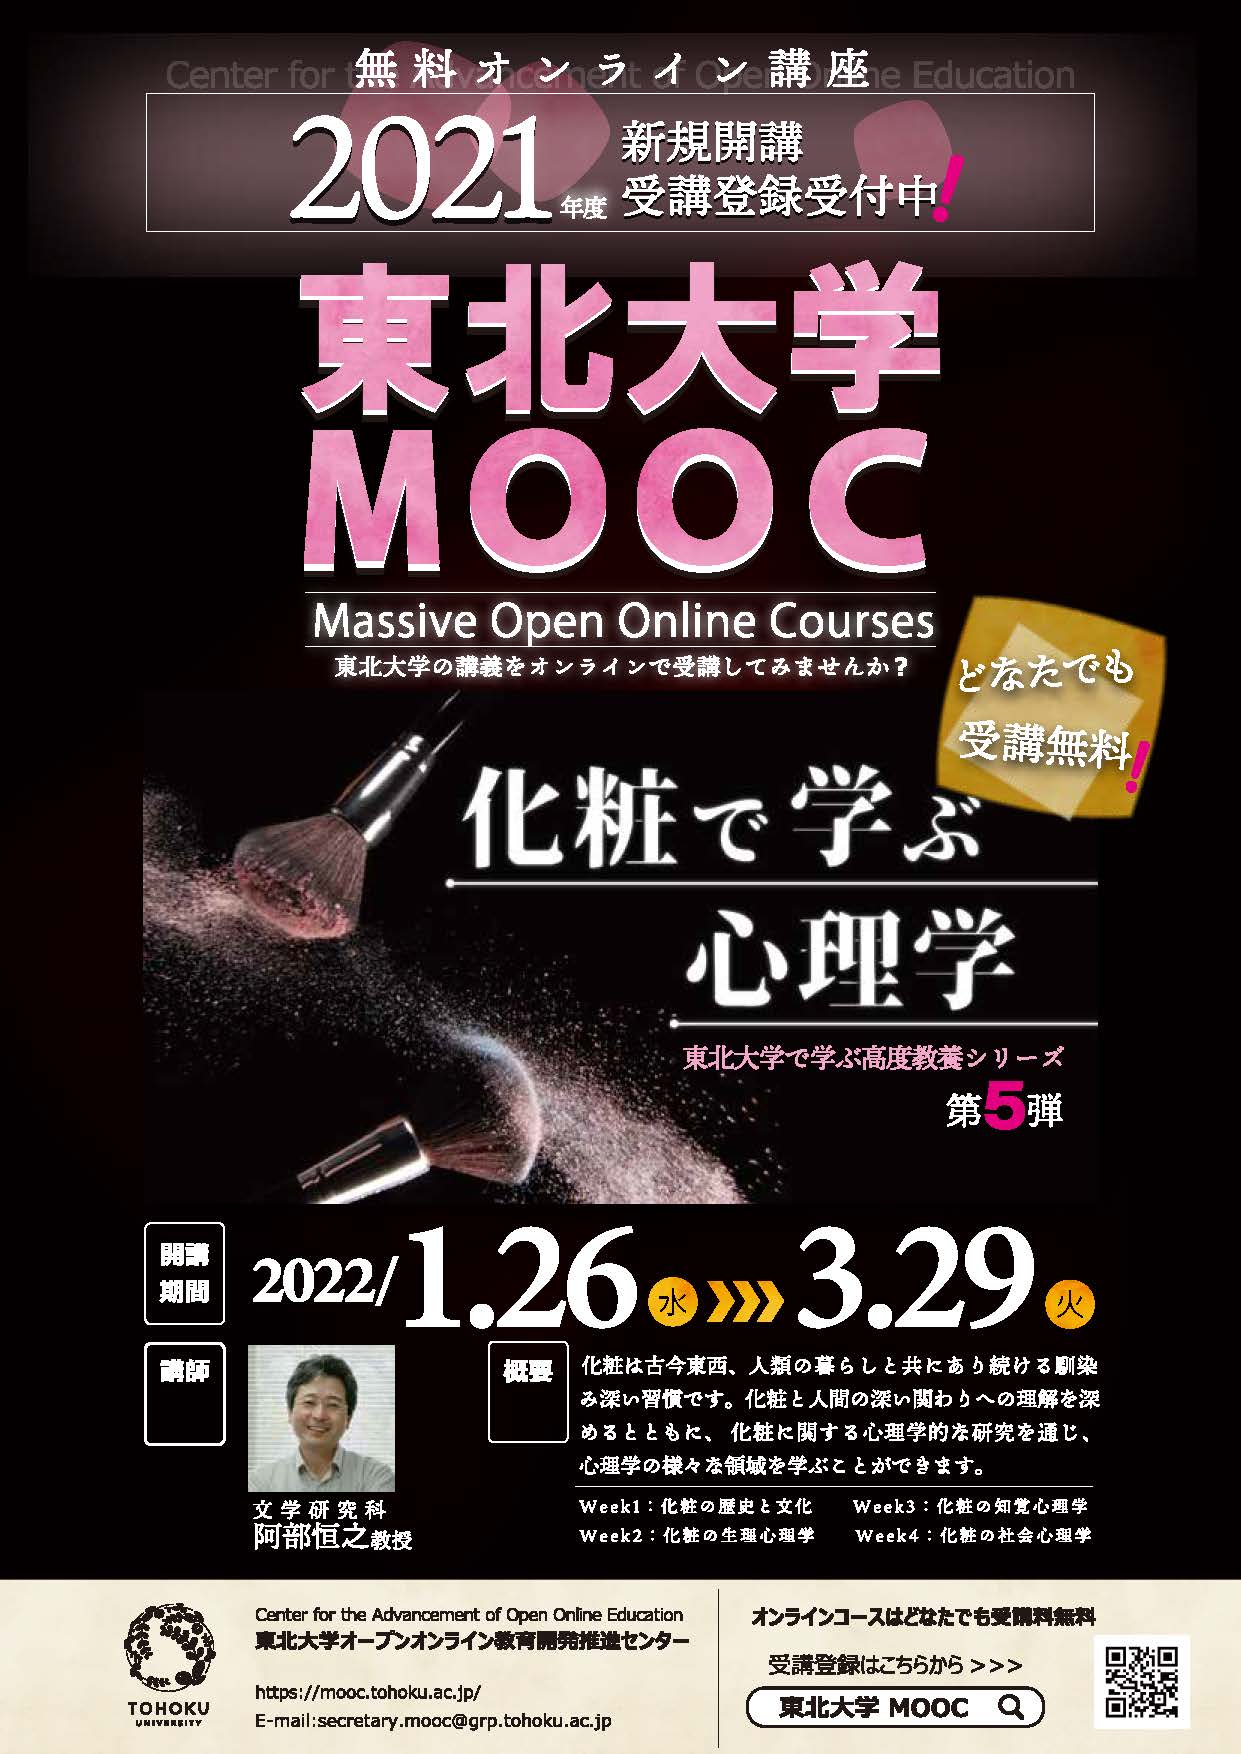 東北大学MOOC 2021LineUp